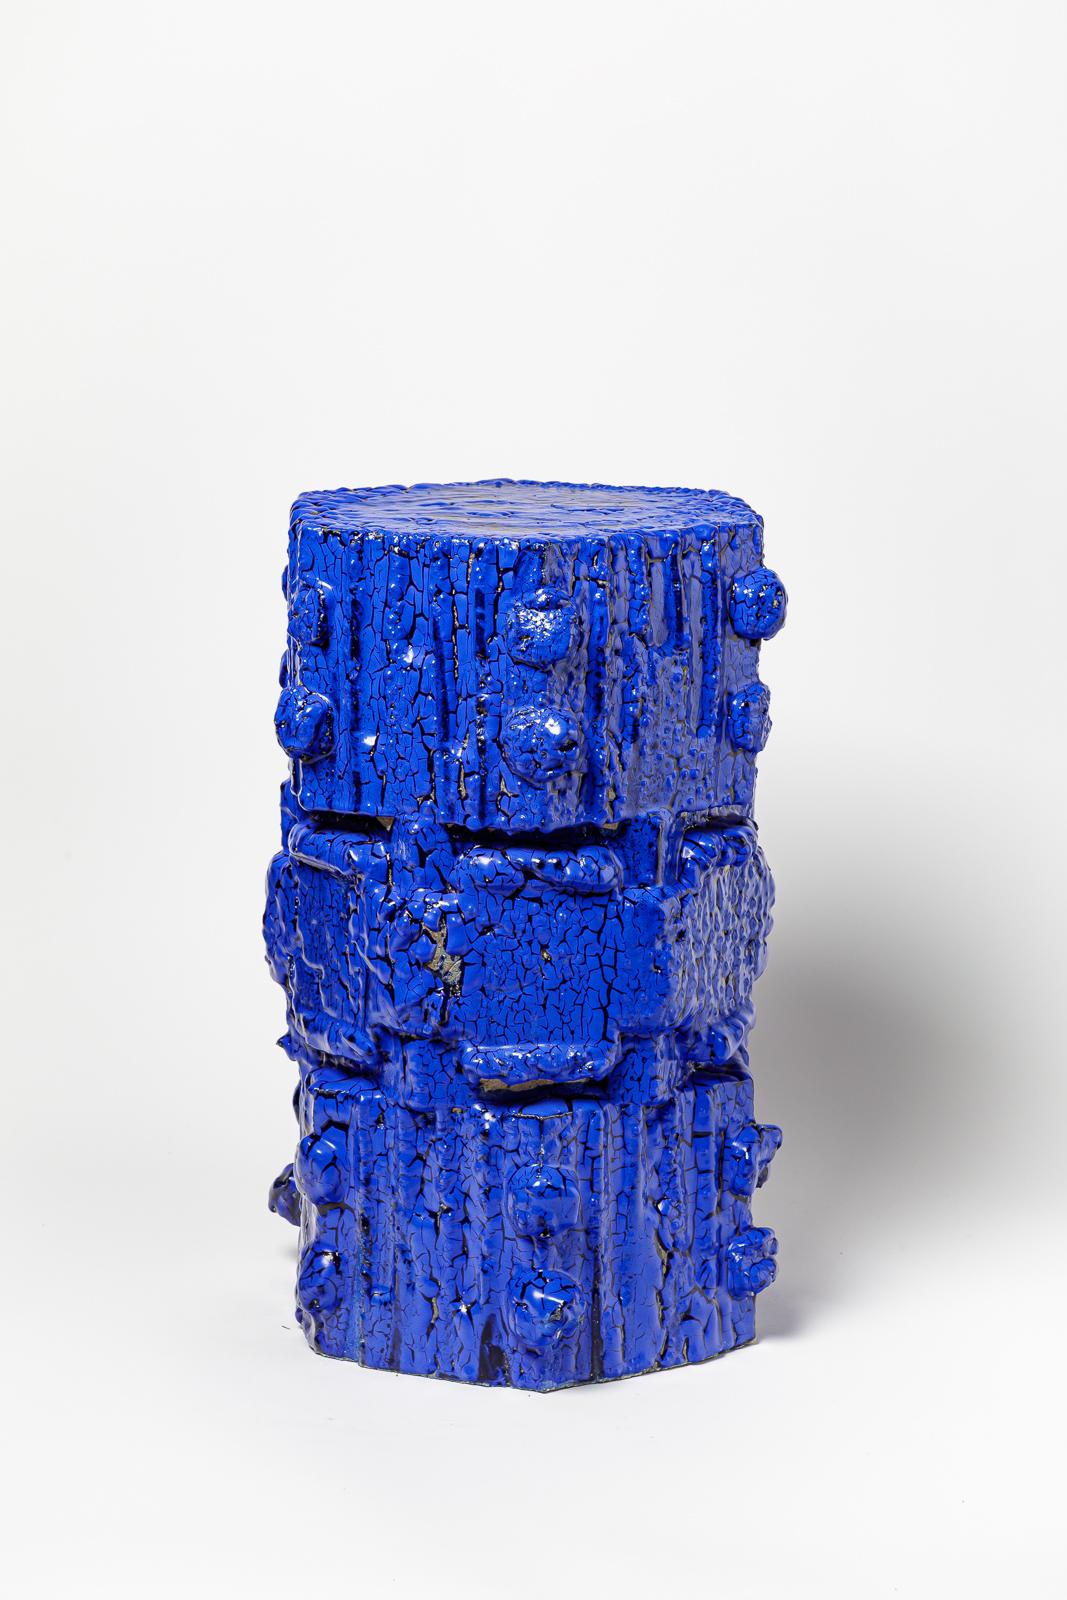 Tabouret en grès bollène émaillé bleu de Jean Ponsart.
Monogramme de l'artiste à la base. 2023.
H : 20.8' x 12.6' x 10.8 pouces.